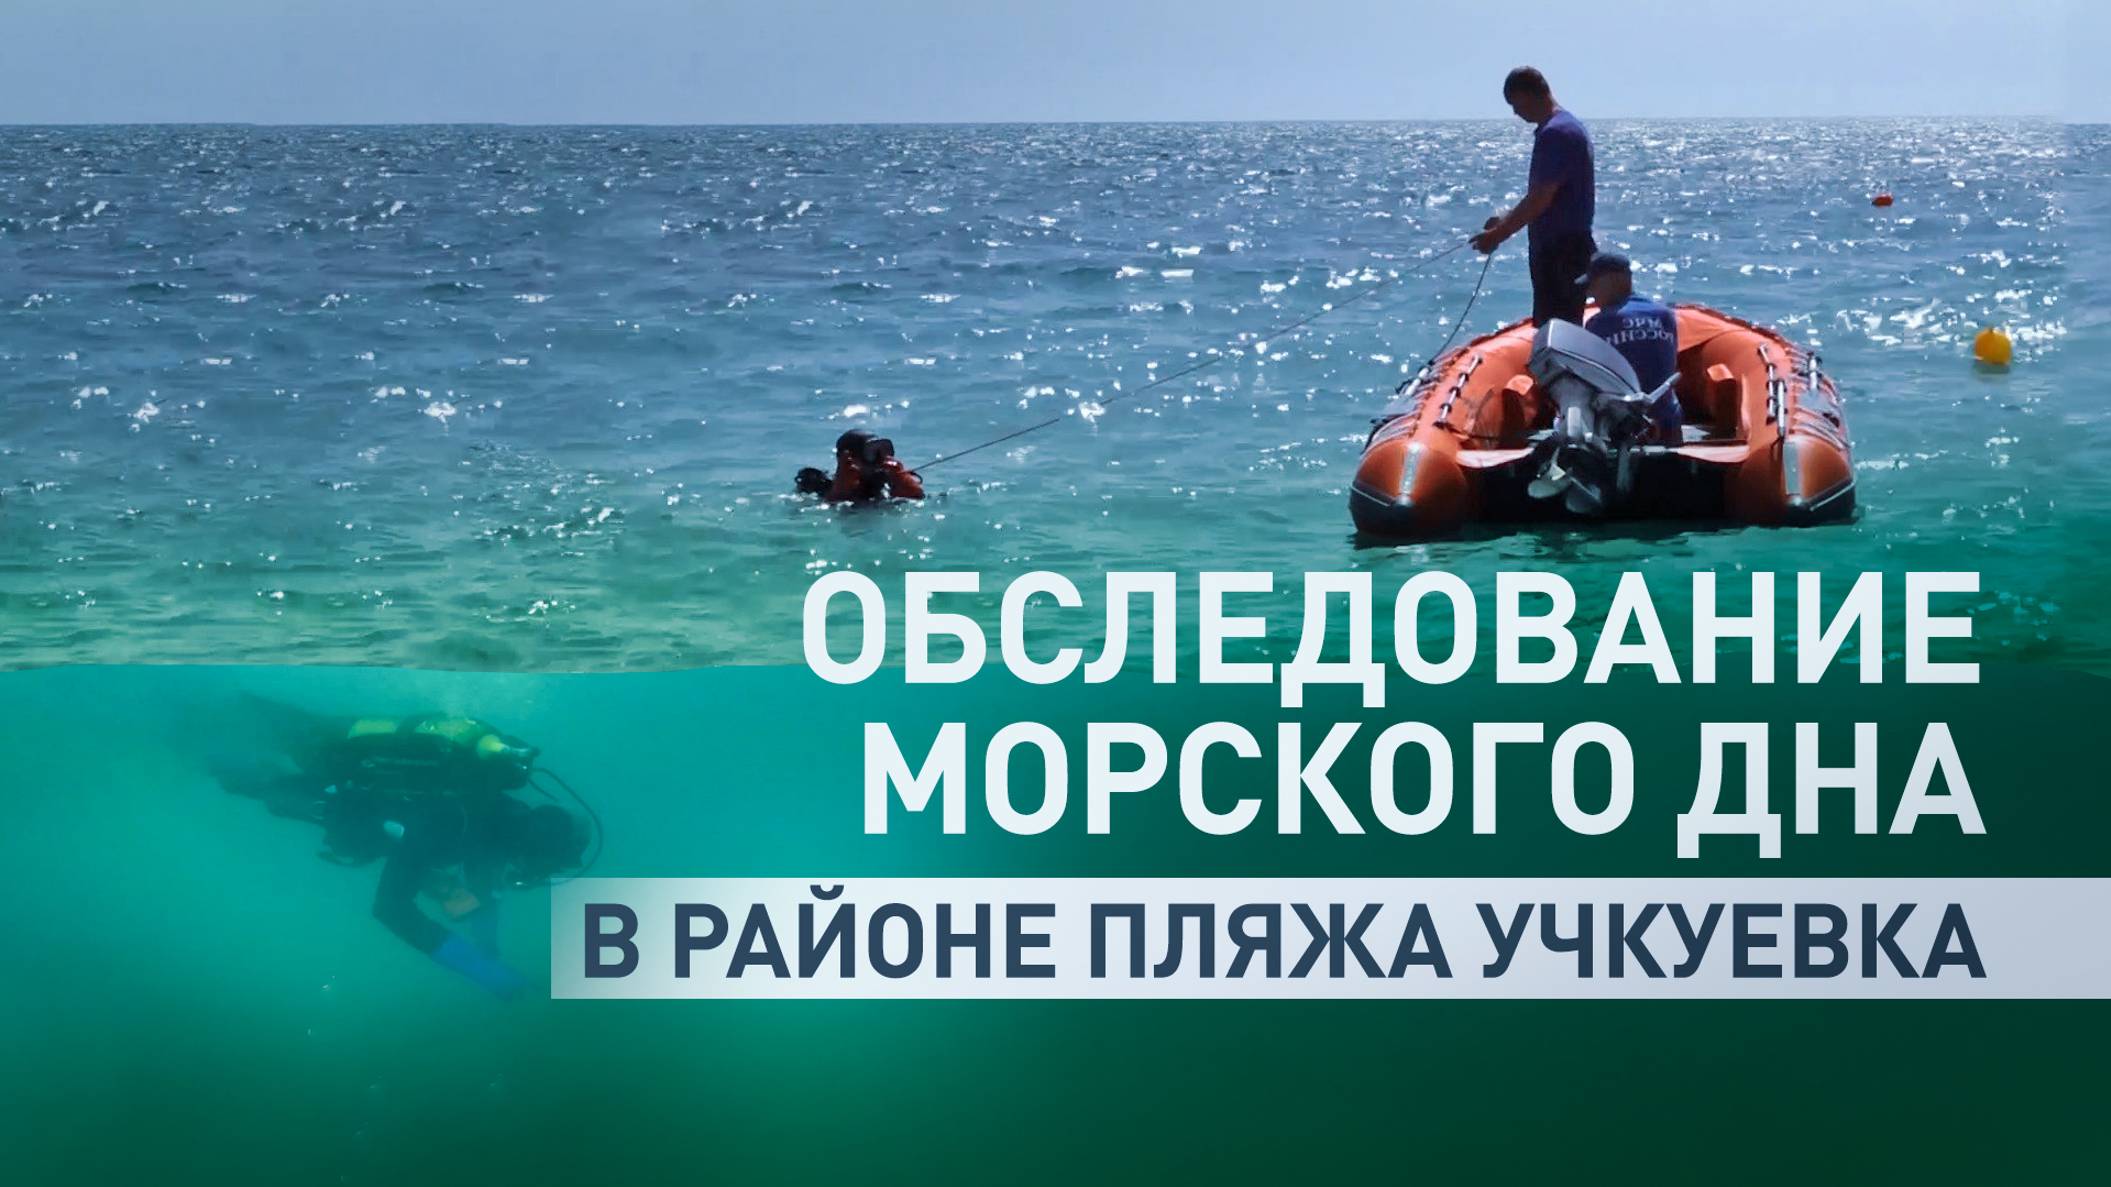 Сотрудники МЧС обнаружили неразорвавшийся кассетный боеприпас в районе пляжа Учкуевка